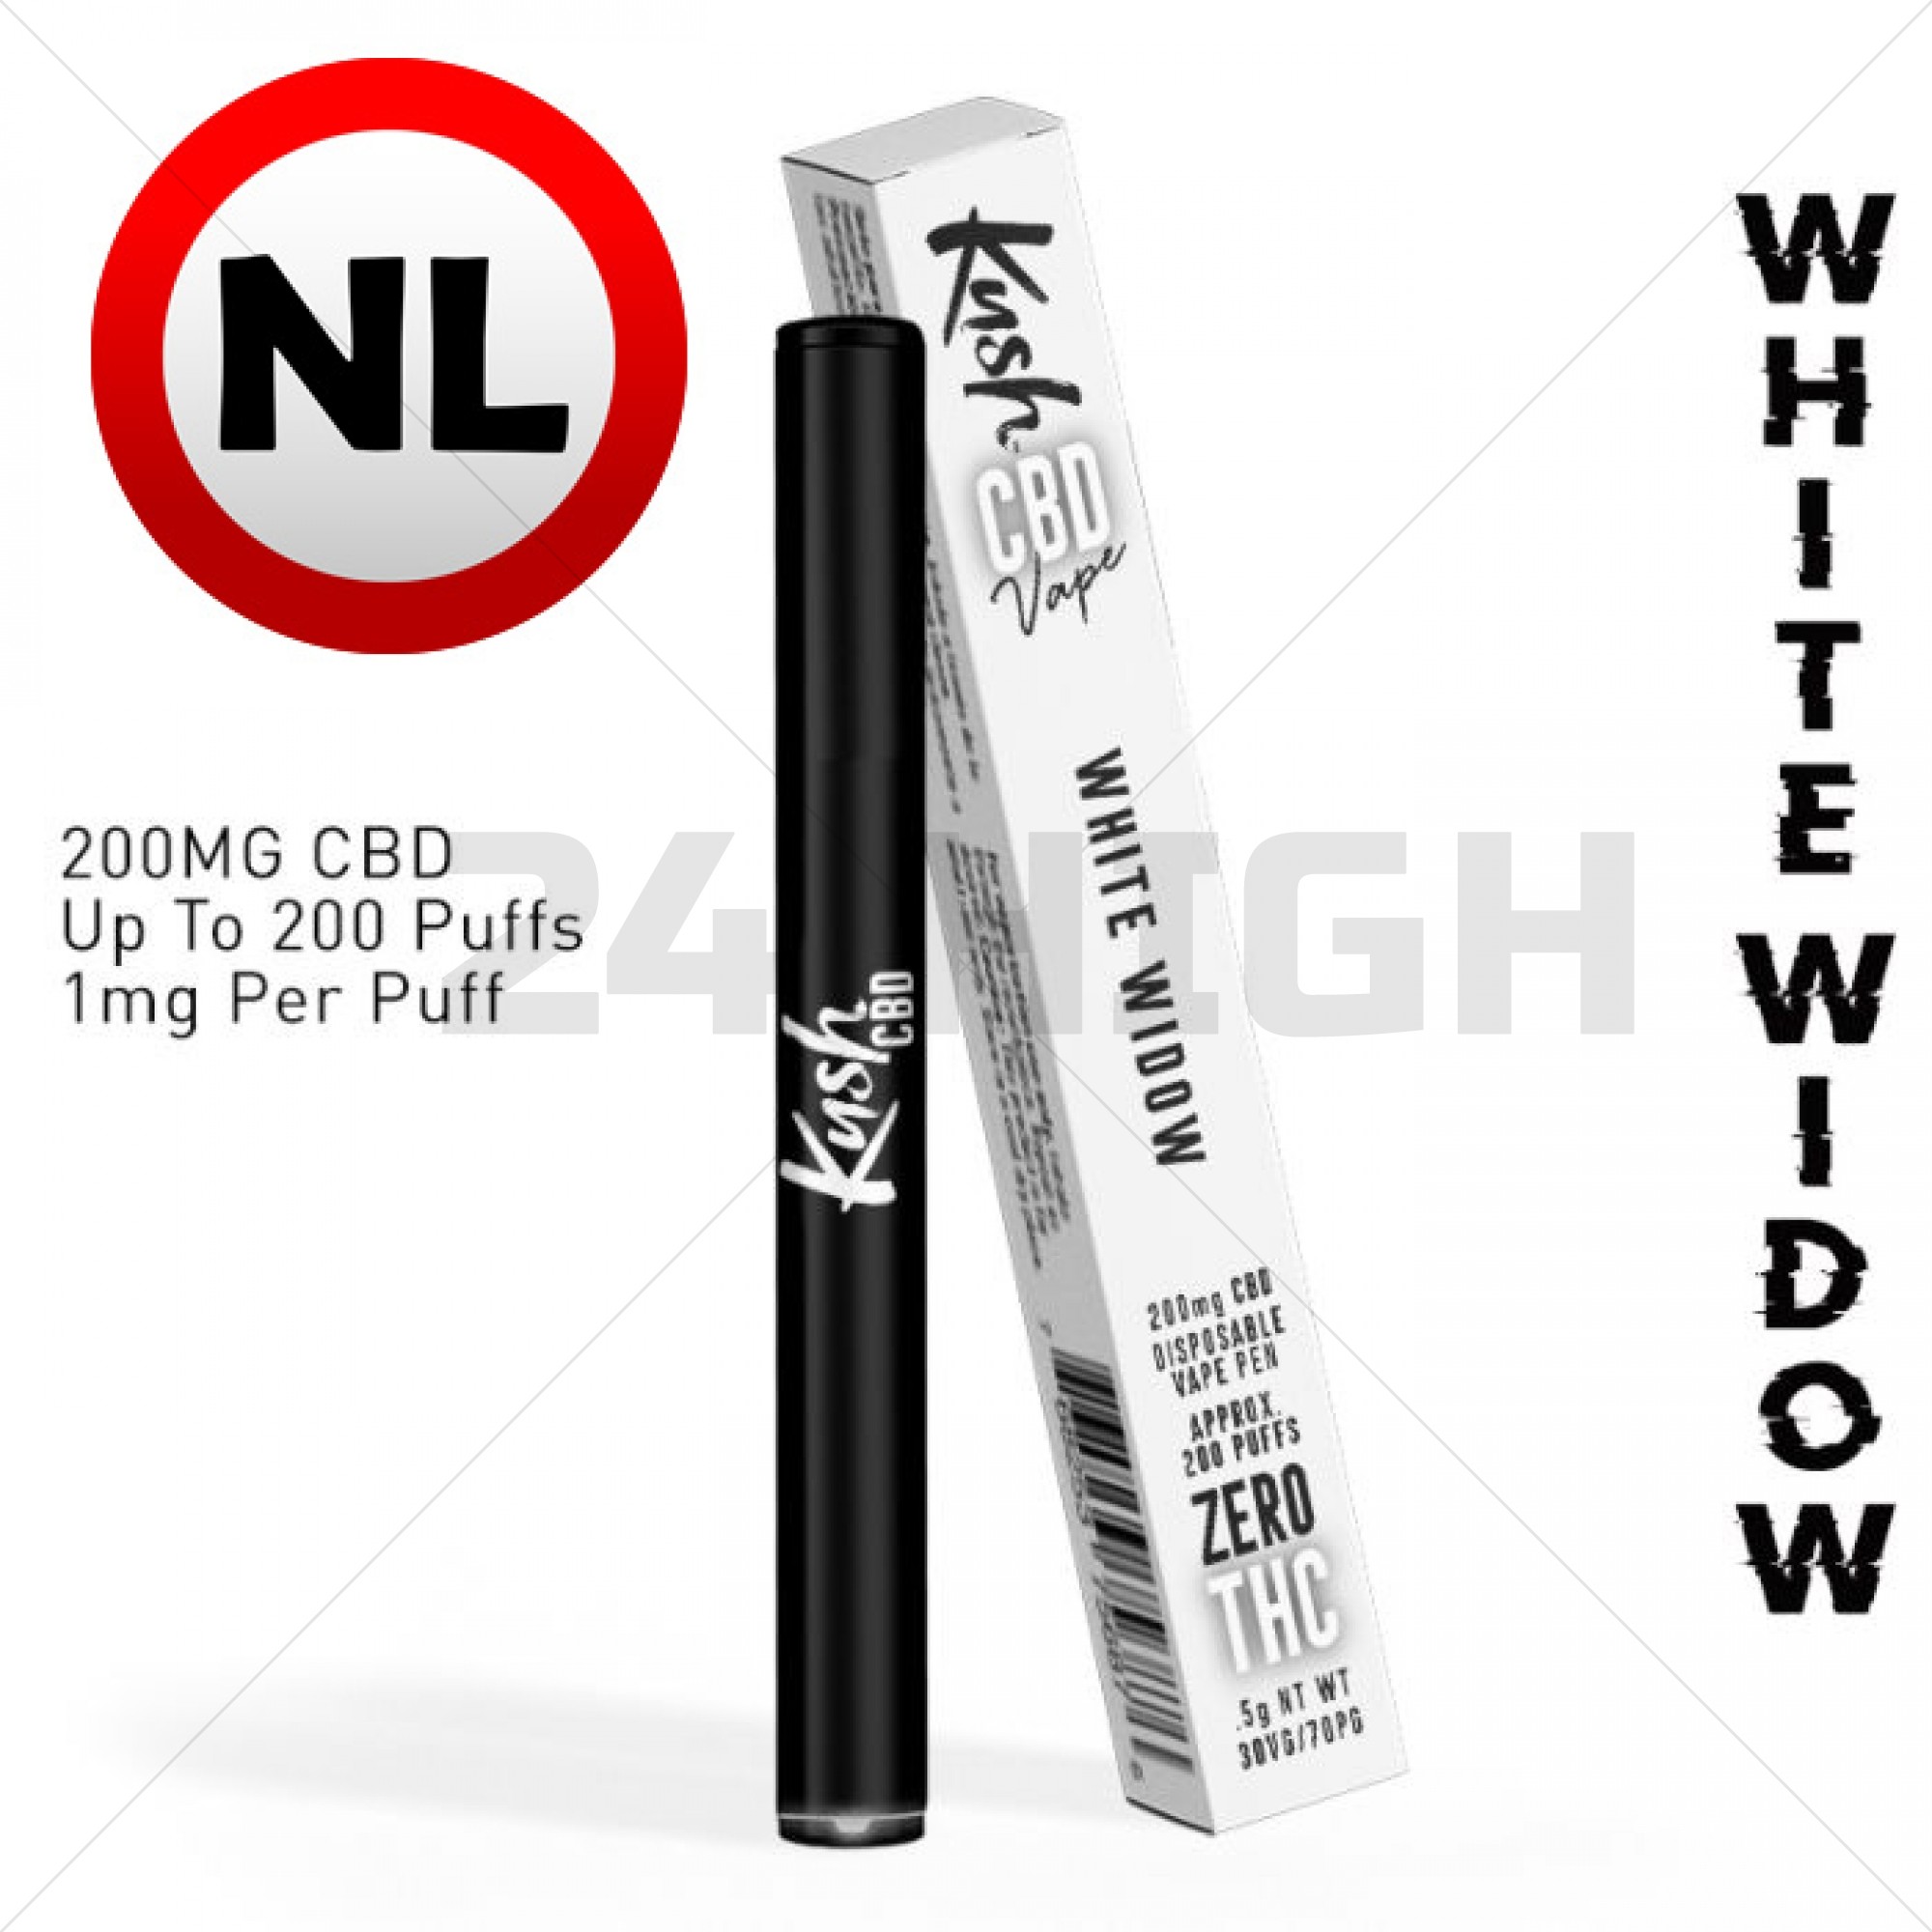 Kush CBD Vape Pen - WHITE WIDOW 200 MG CBD